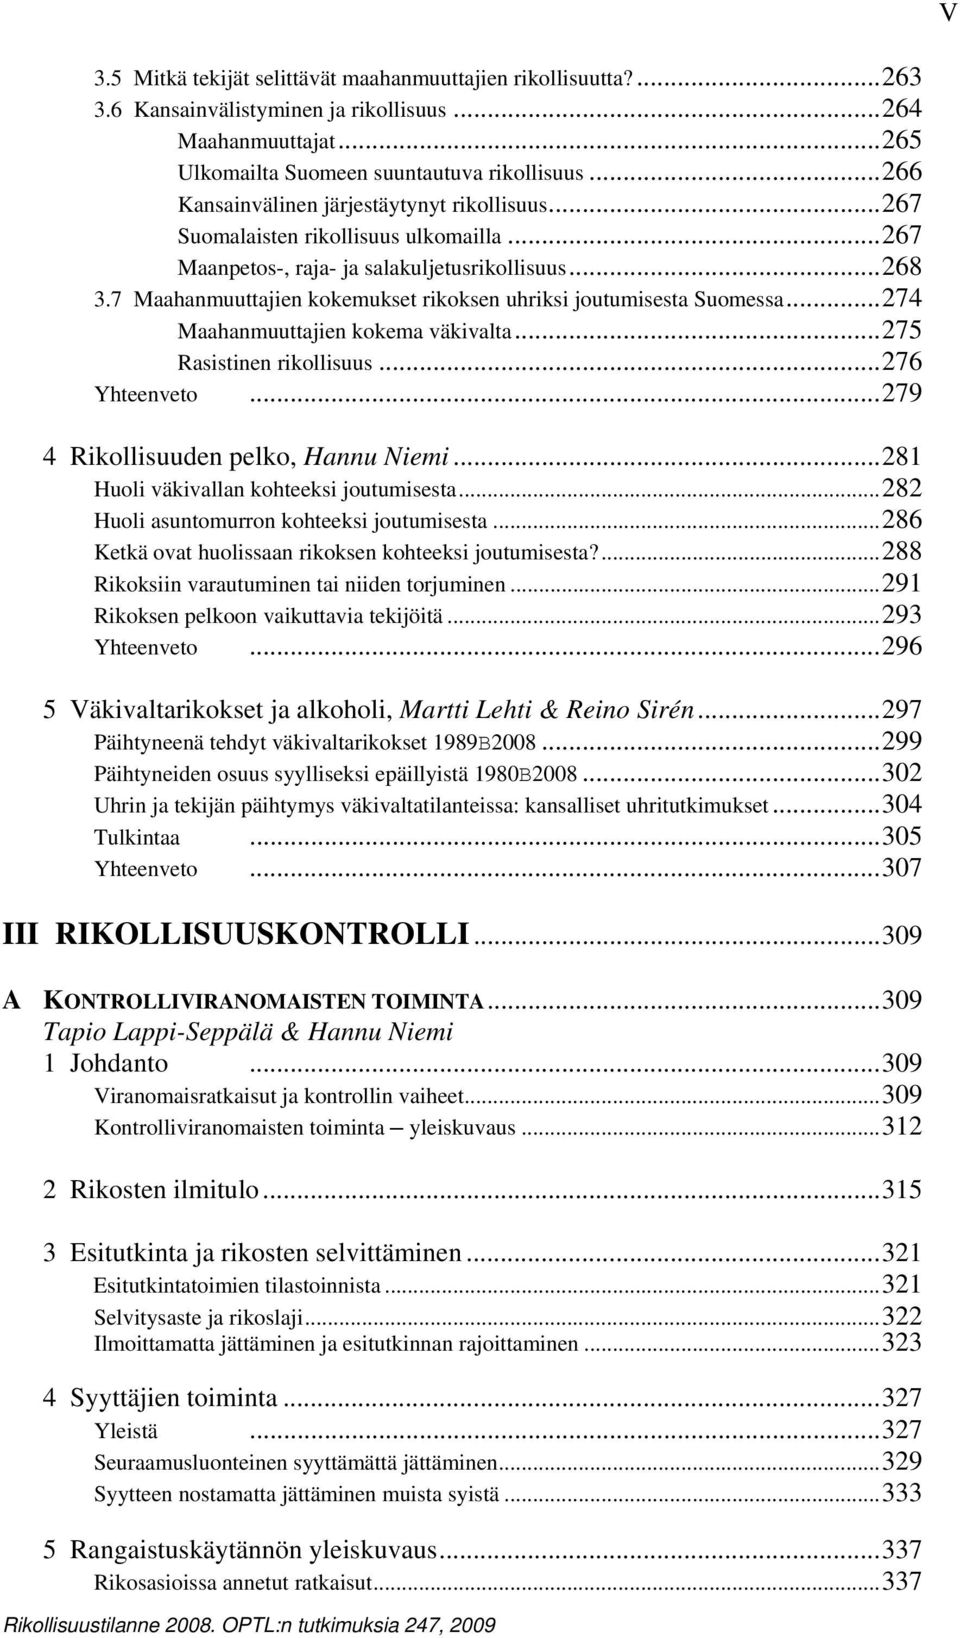 7 Maahanmuuttajien kokemukset rikoksen uhriksi joutumisesta Suomessa...274 Maahanmuuttajien kokema väkivalta...275 Rasistinen rikollisuus...276 Yhteenveto...279 4 Rikollisuuden pelko, Hannu Niemi.